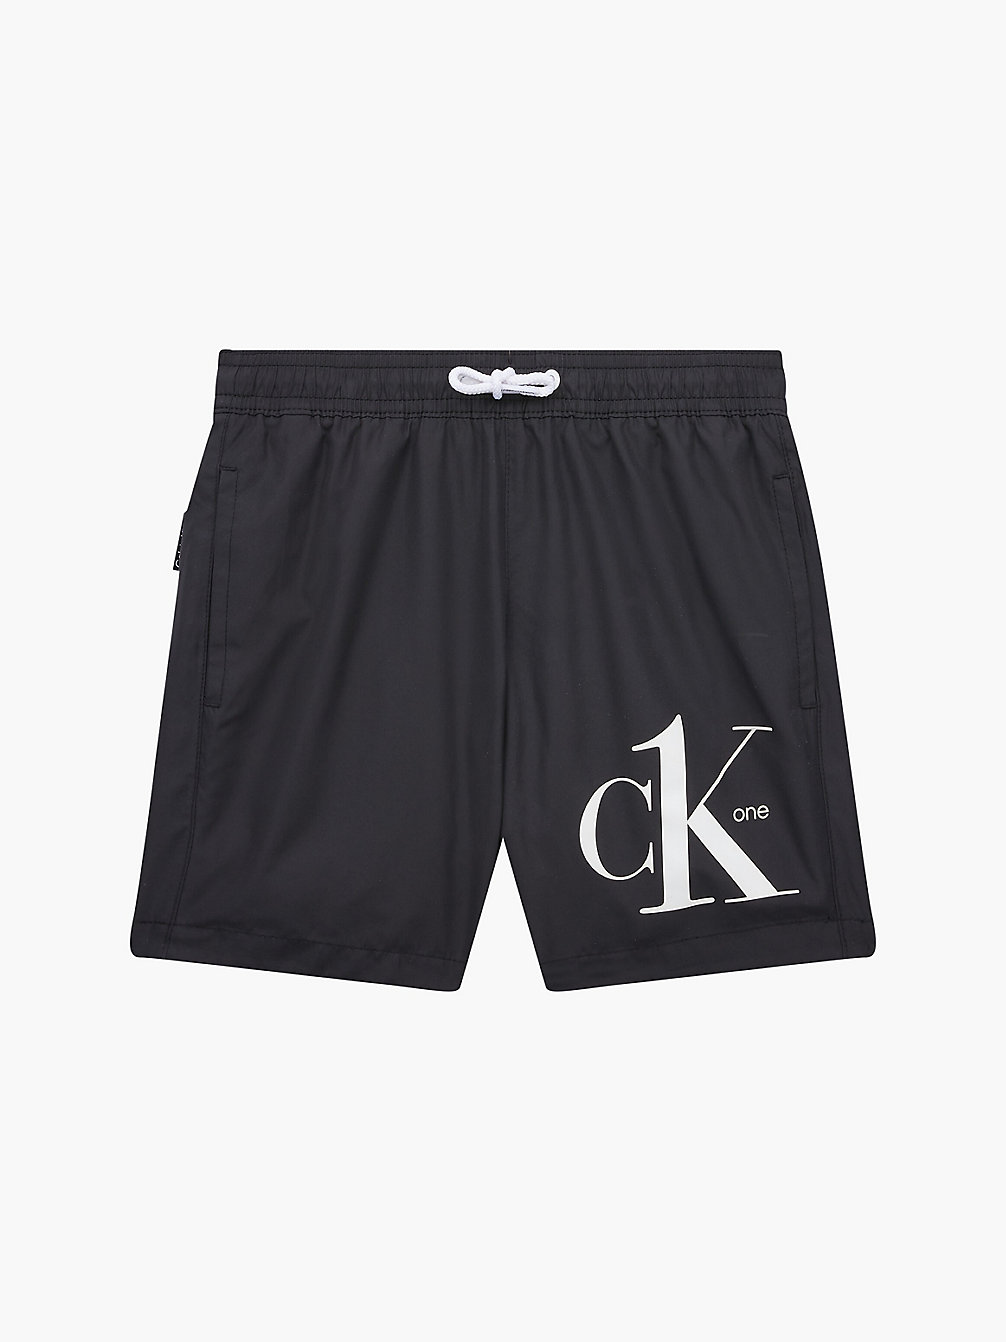 PVH BLACK Badeshorts Für Jungen - CK One undefined boys Calvin Klein